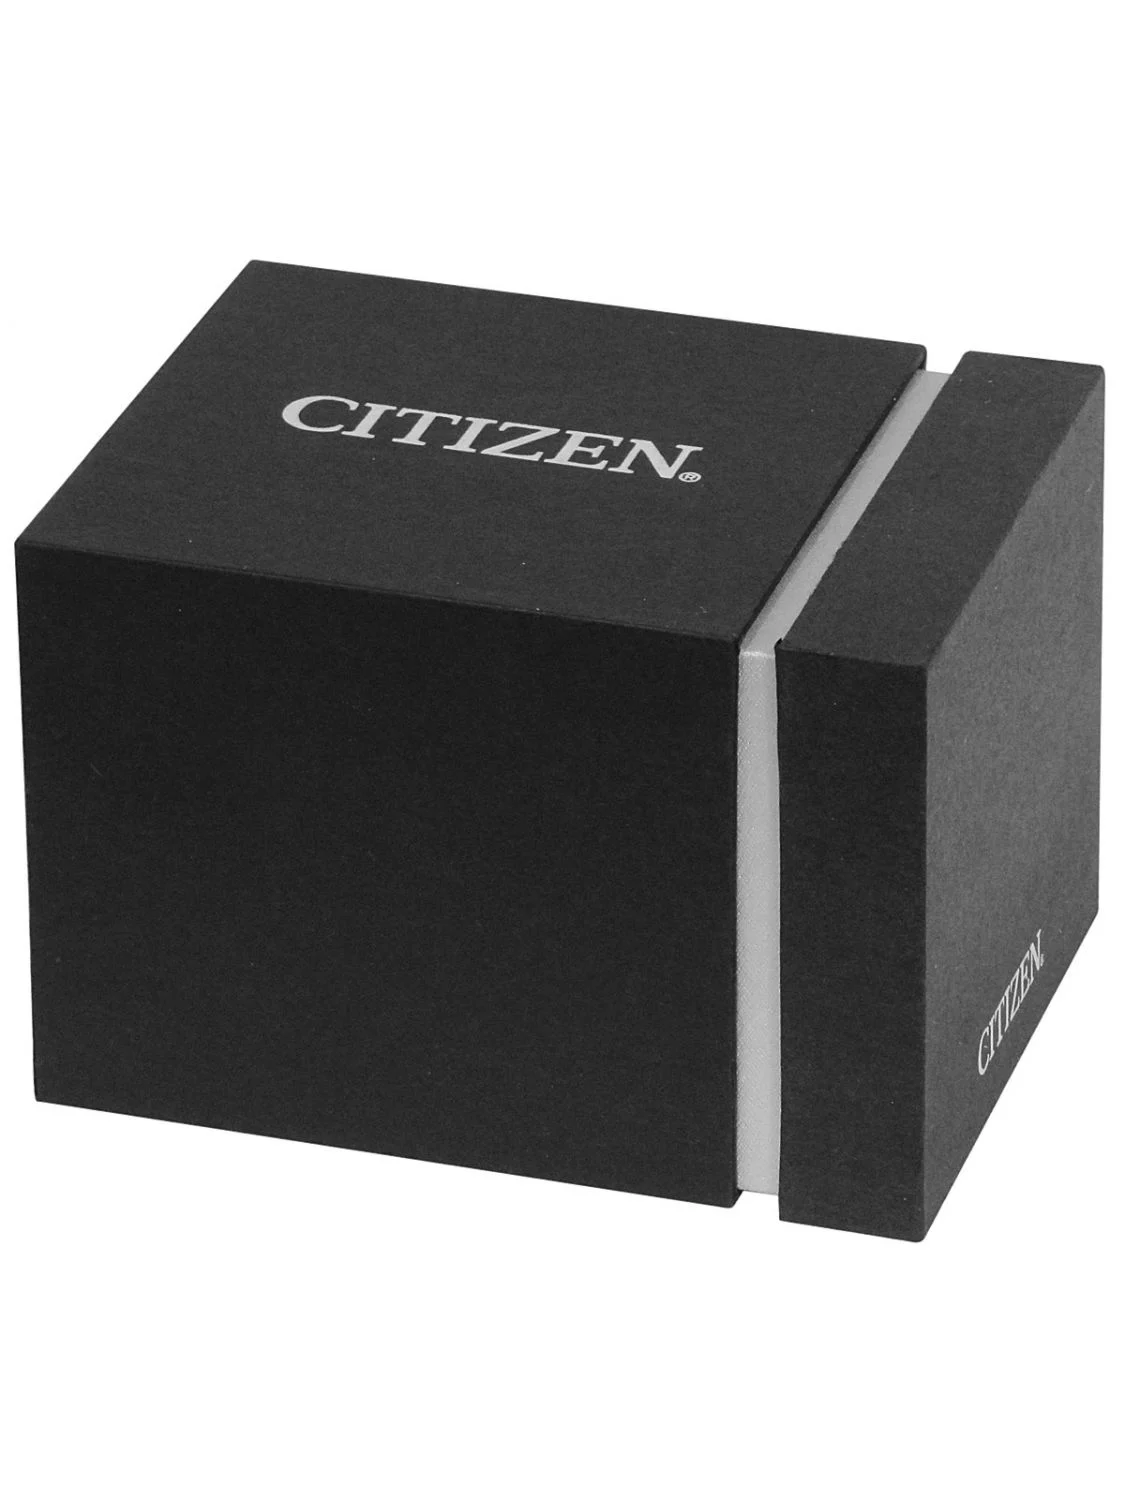 Citizen EU6090-54L Uhr Damenuhr Edelstahl Datum Silber